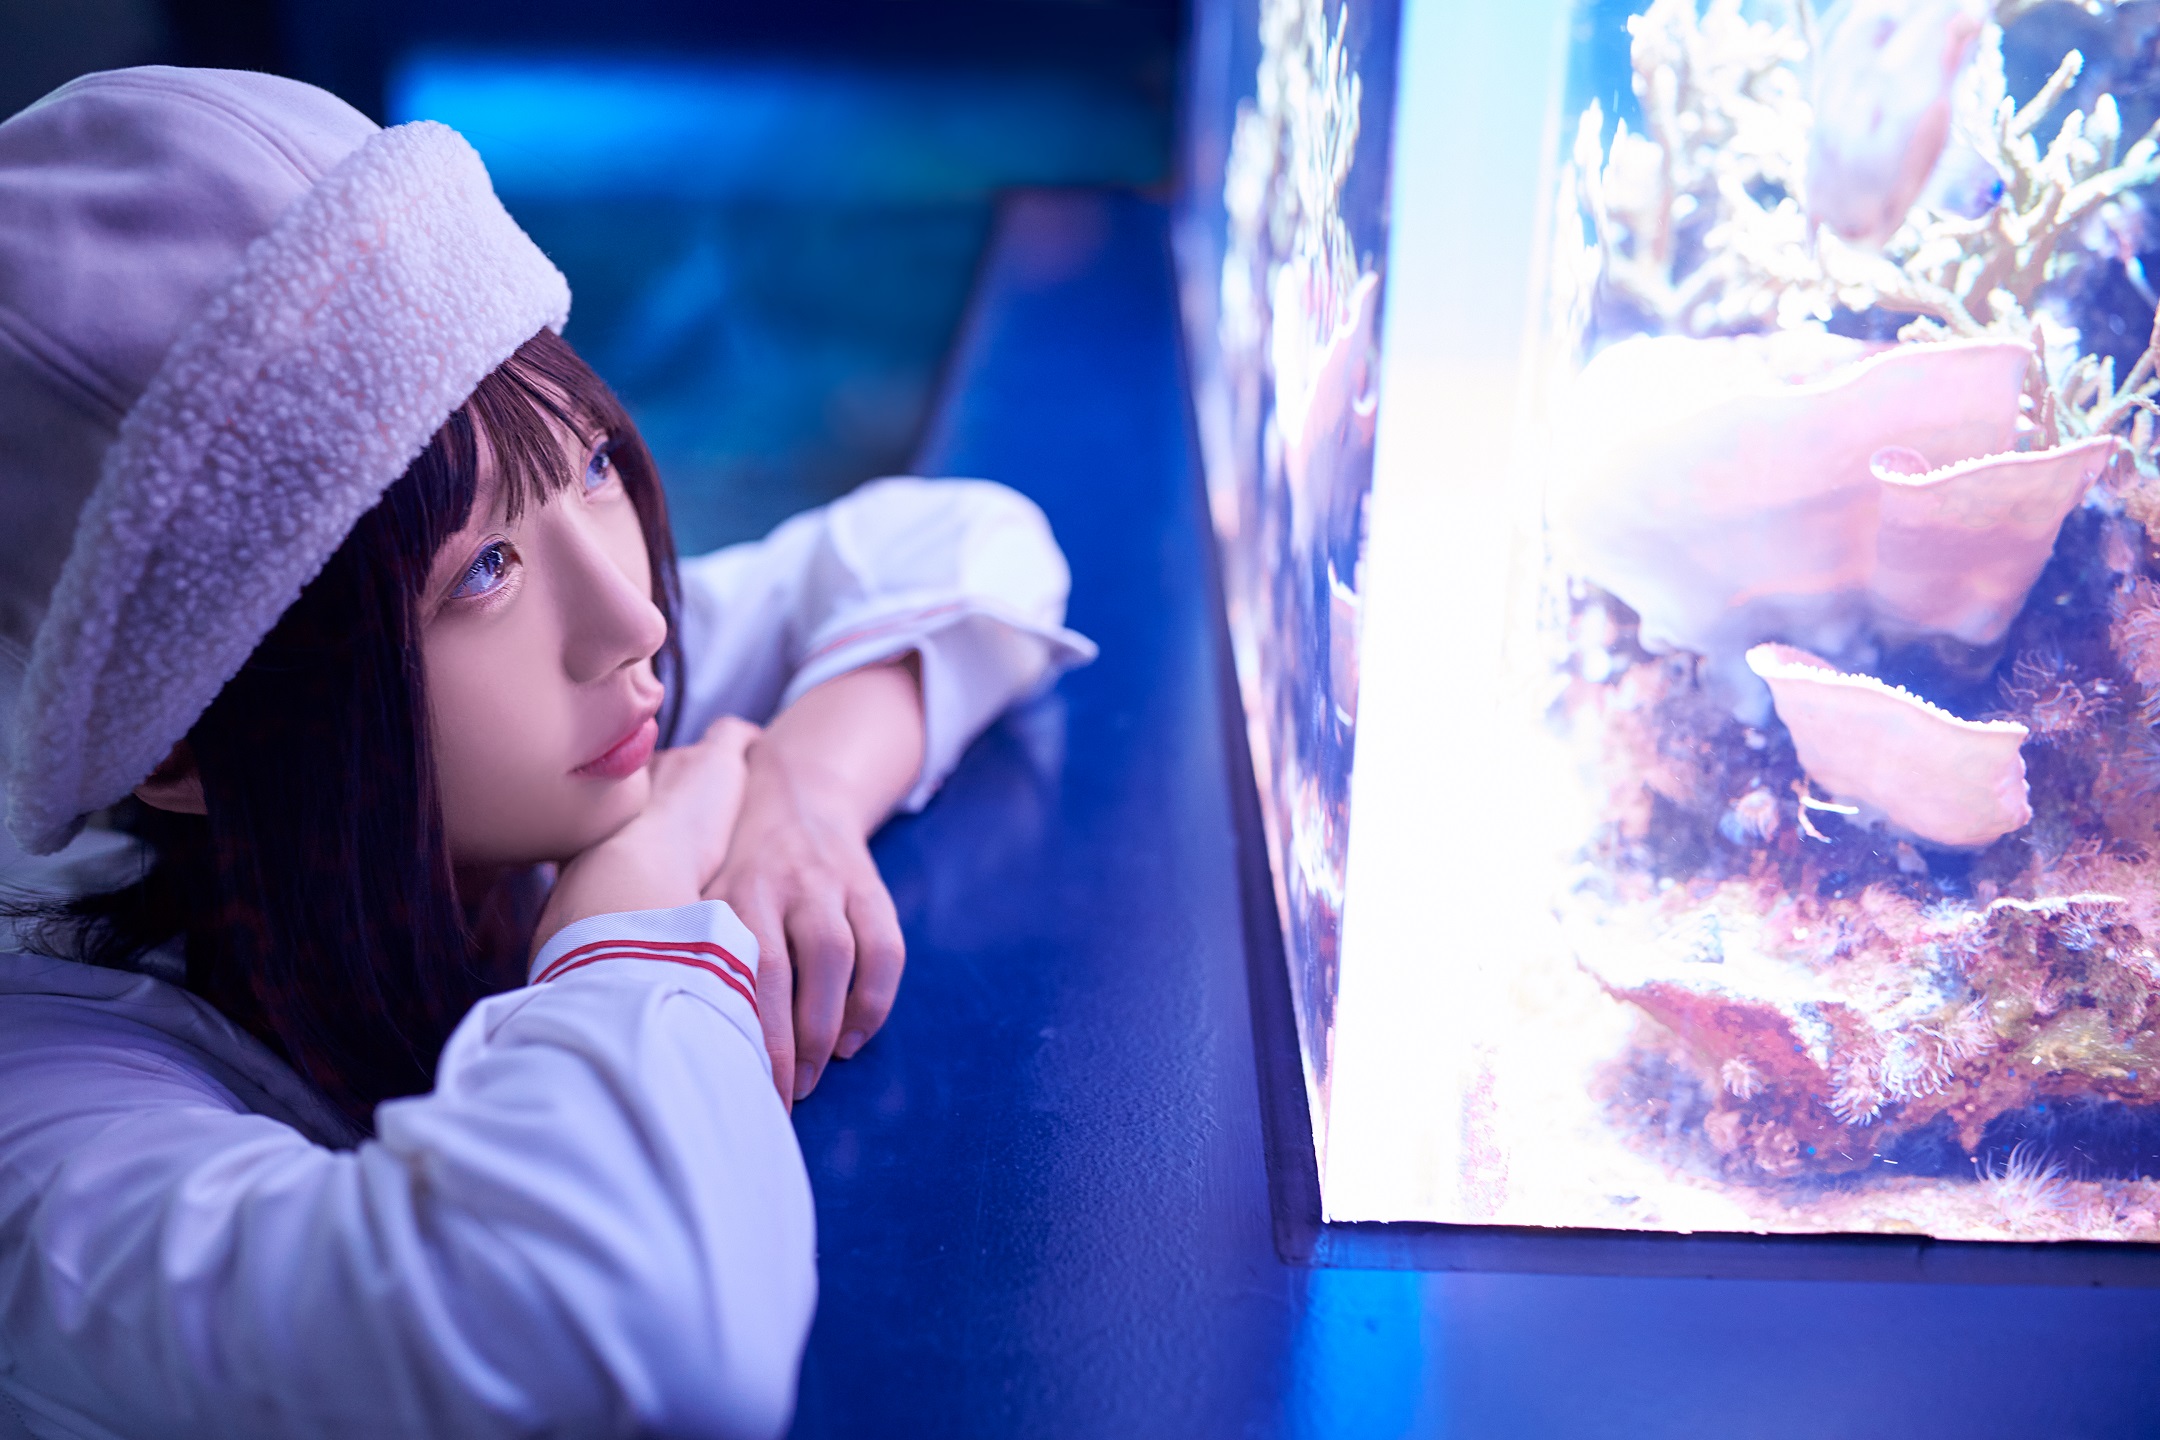 Max Chang Women Asian Hat Aquarium Glowing 2160x1440